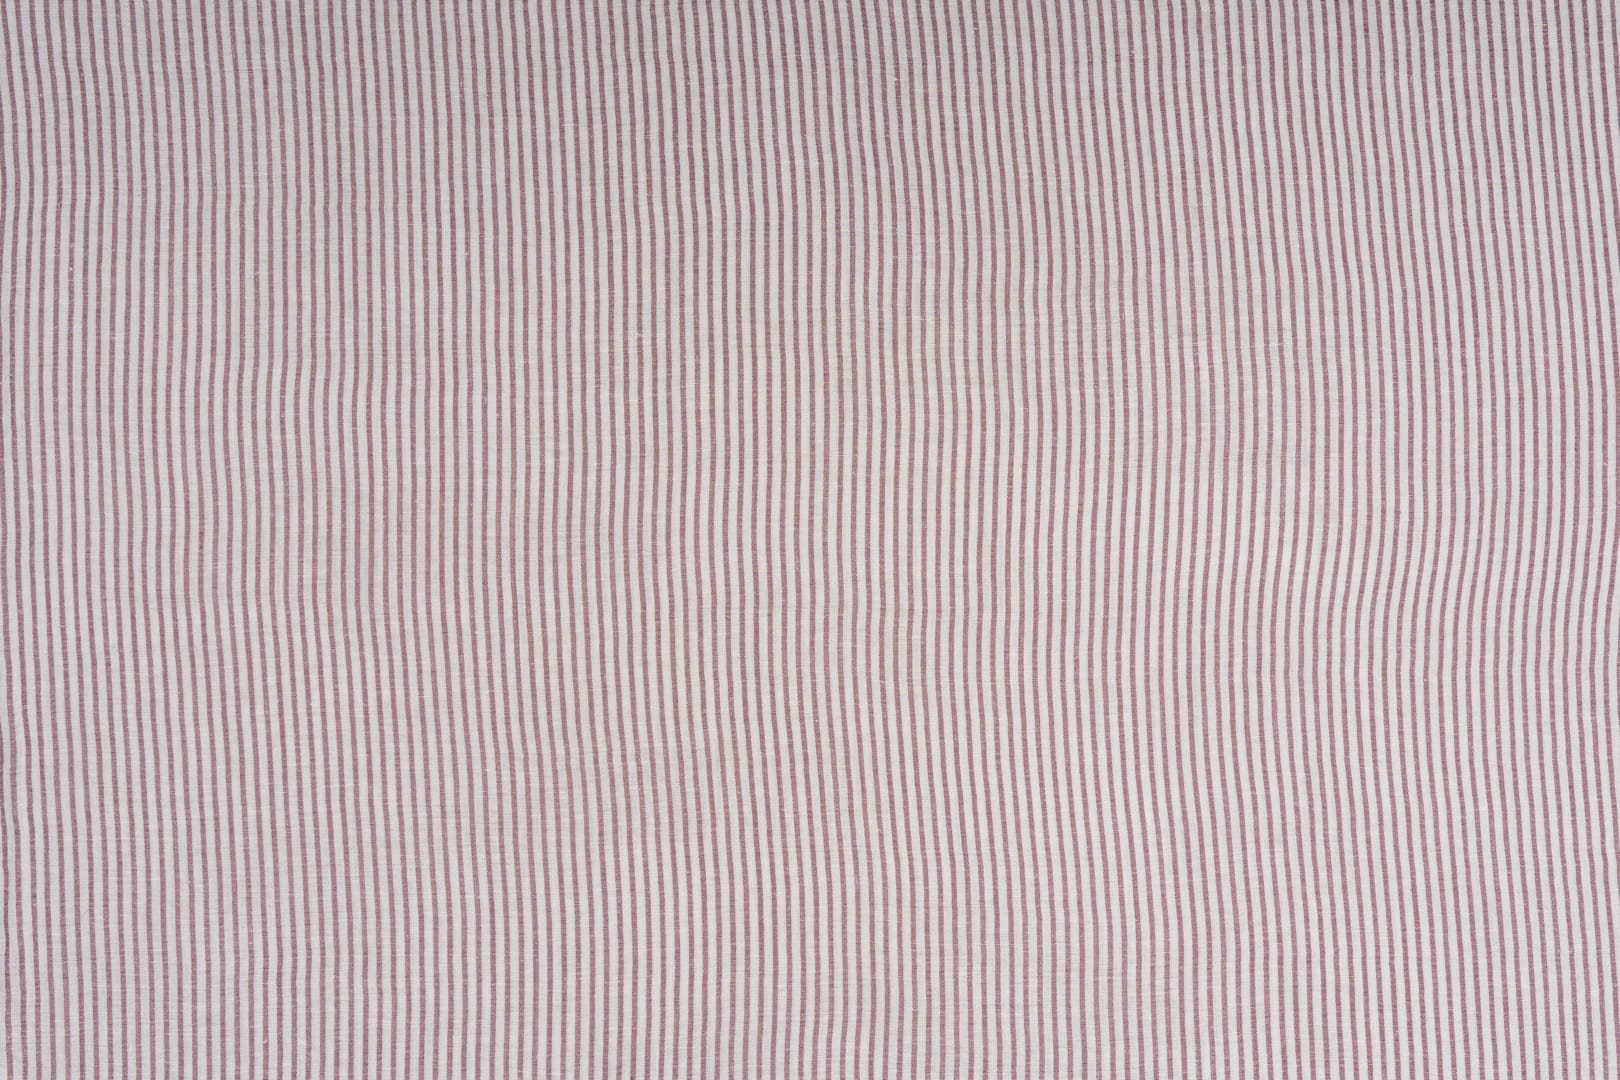 J1843 POGGIOREALE 029 Corallo home decoration fabric